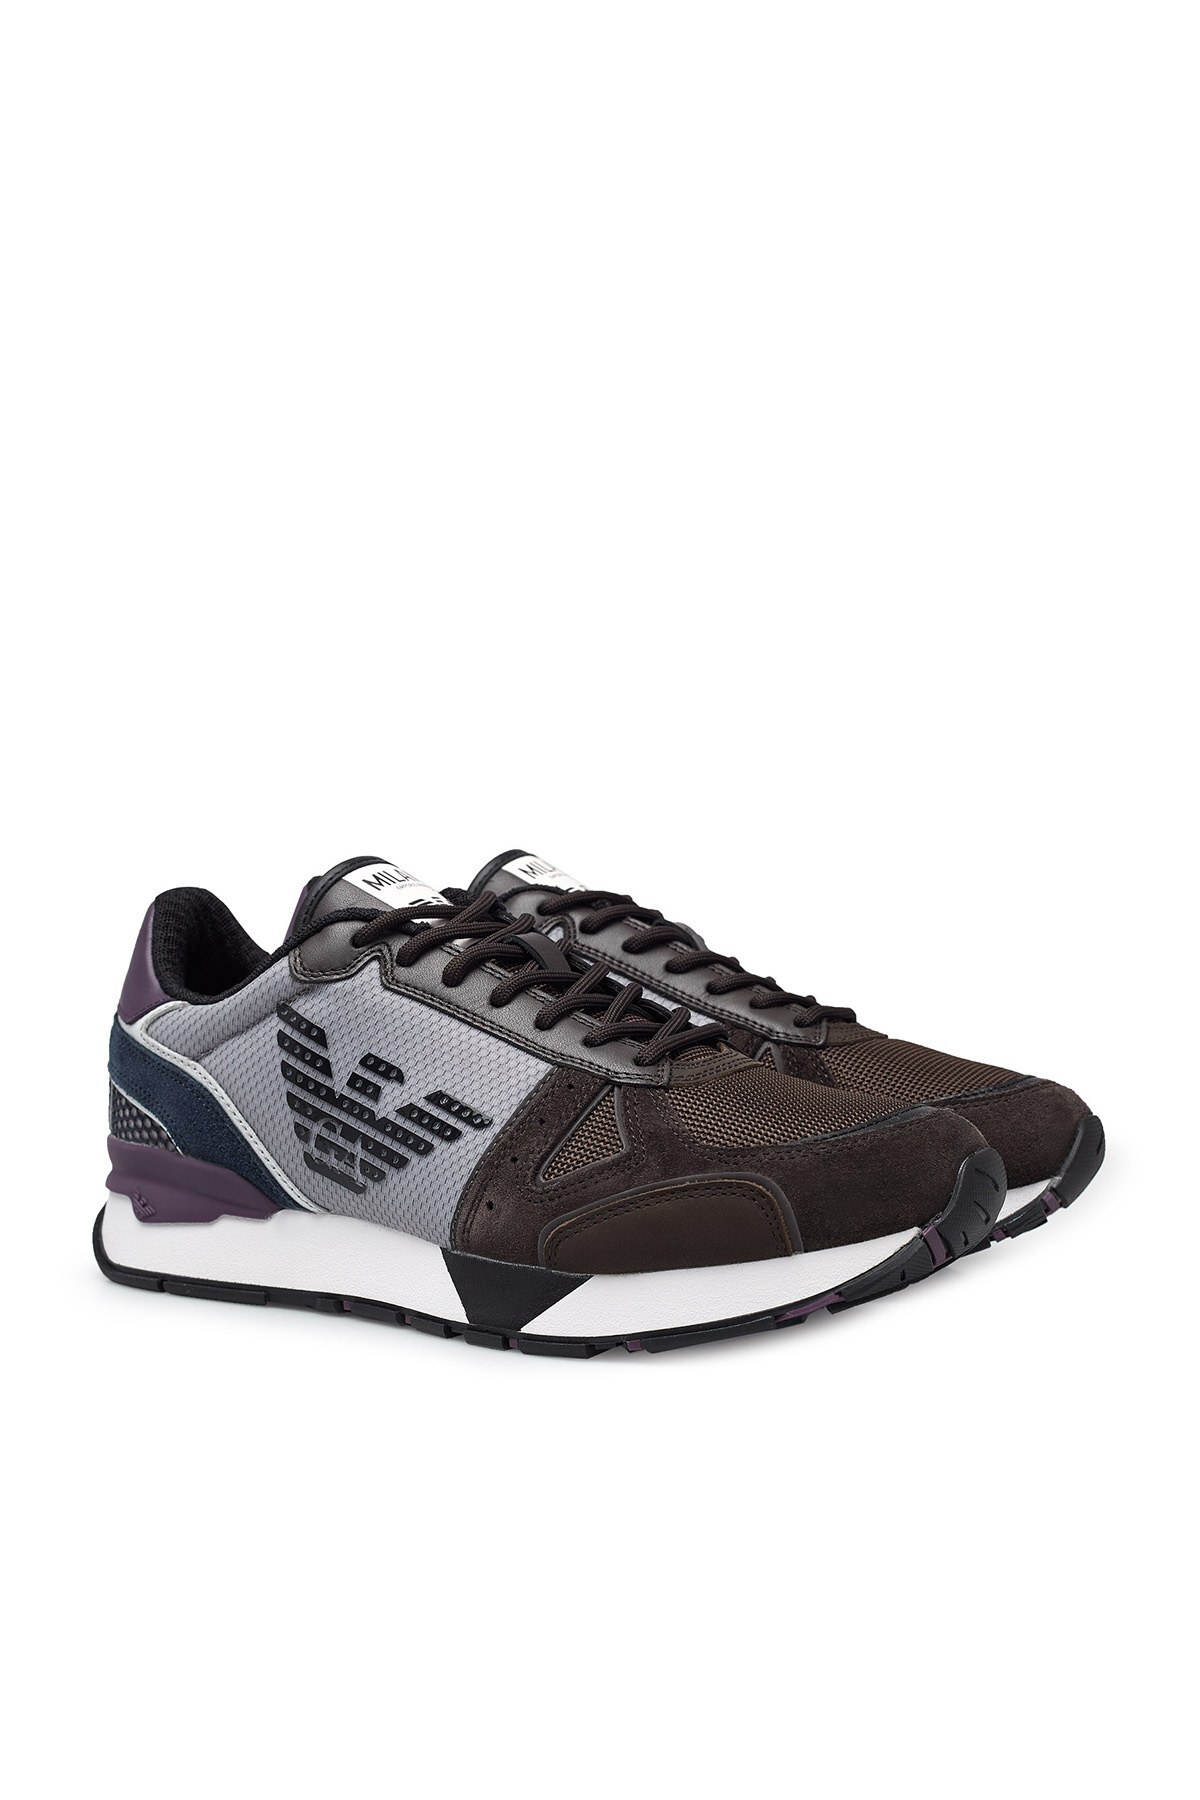 Emporio Armani Sneaker Erkek Ayakkabı X4X289 XM499 N022 KAHVE-GRİ